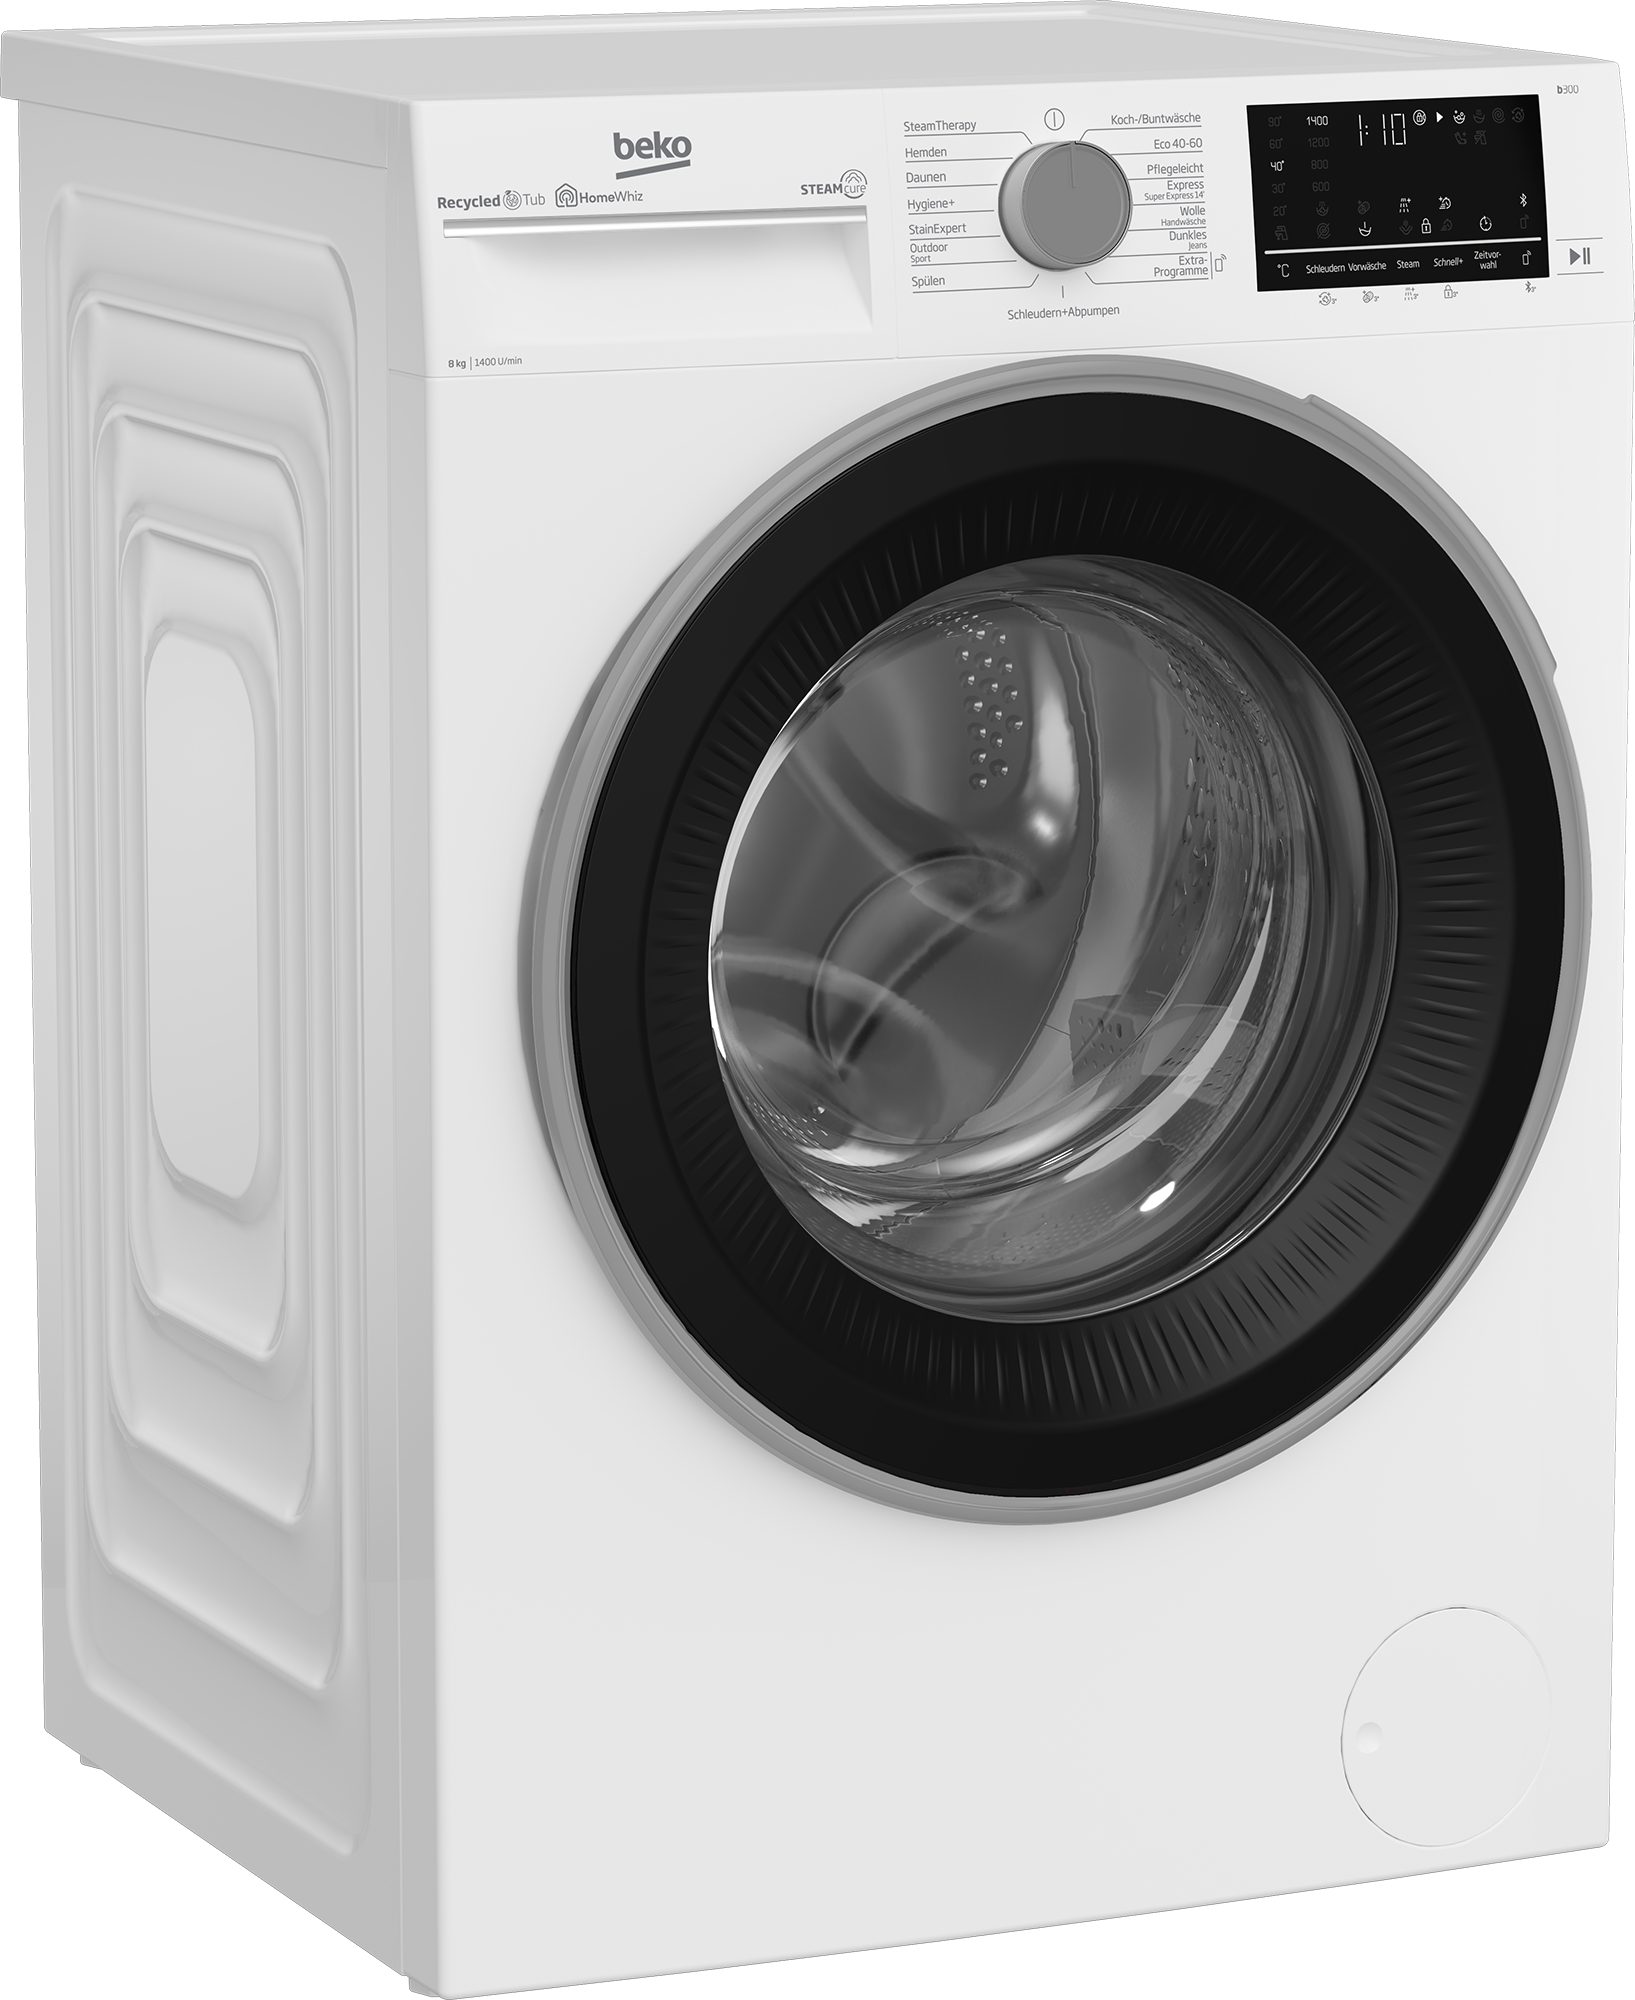 BEKO Waschmaschine b300 B3WFU58415W1, 8 kg, 1400 U/min, SteamCure - 99% allergenfrei | Frontlader